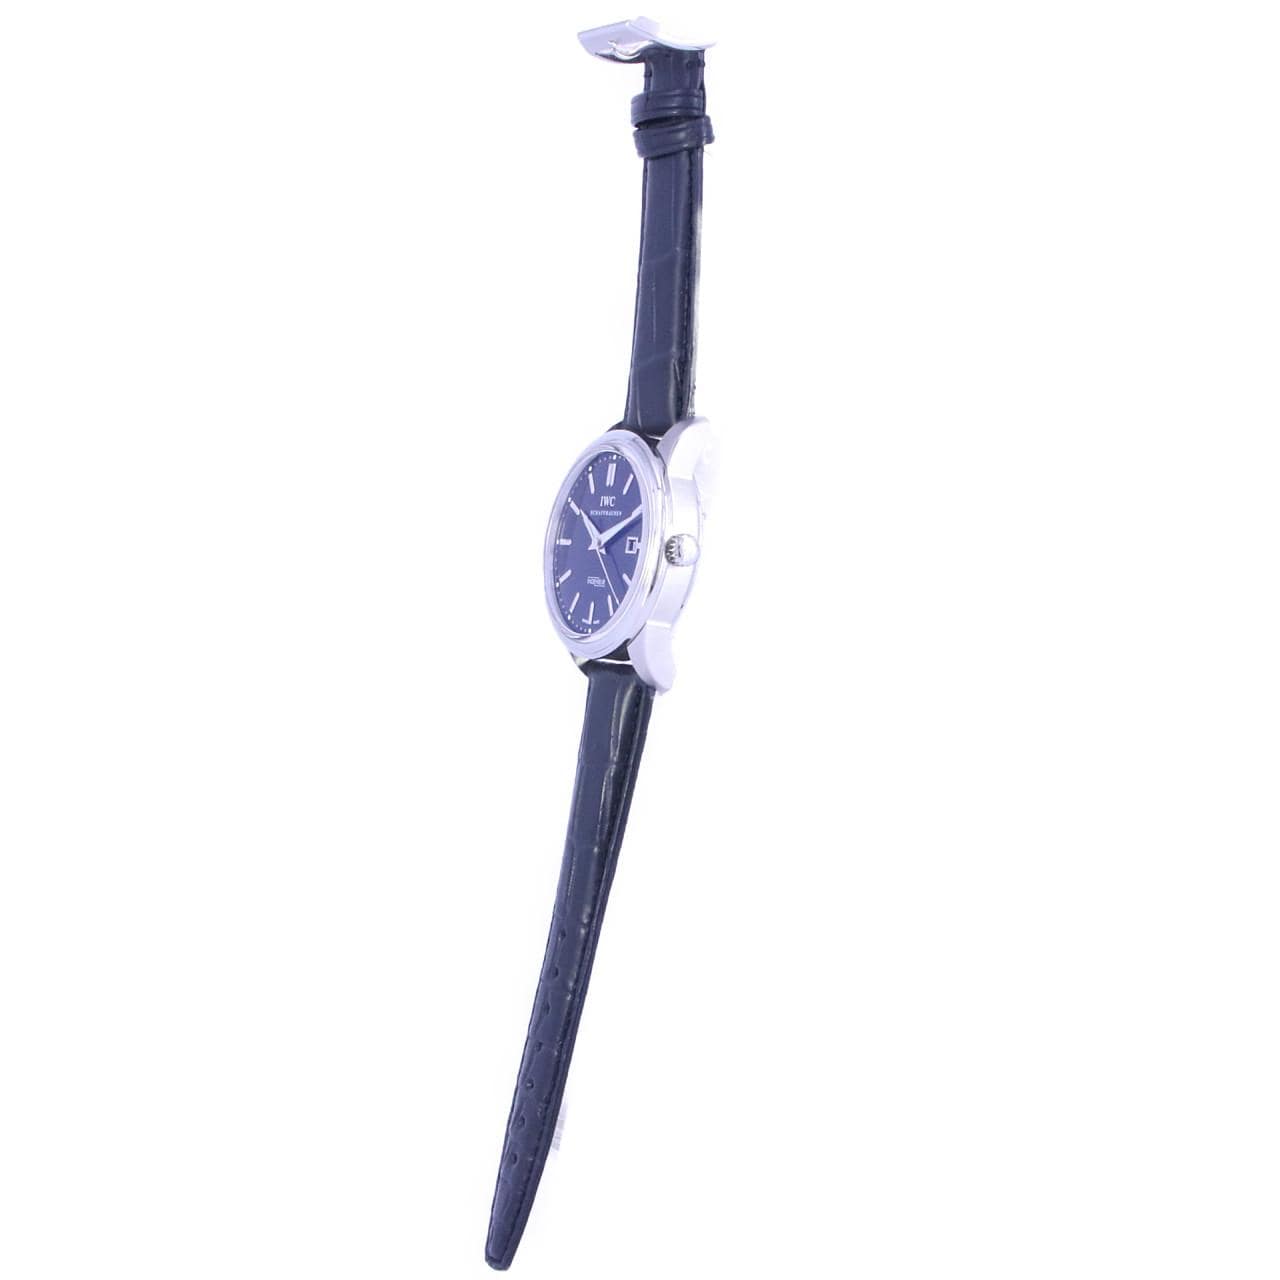 IWC インヂュニア IW323301 メンズ 腕時計 デイト 裏スケルトン 自動巻き インターナショナル ウォッチ カンパニー Ingenieur VLP 90211836